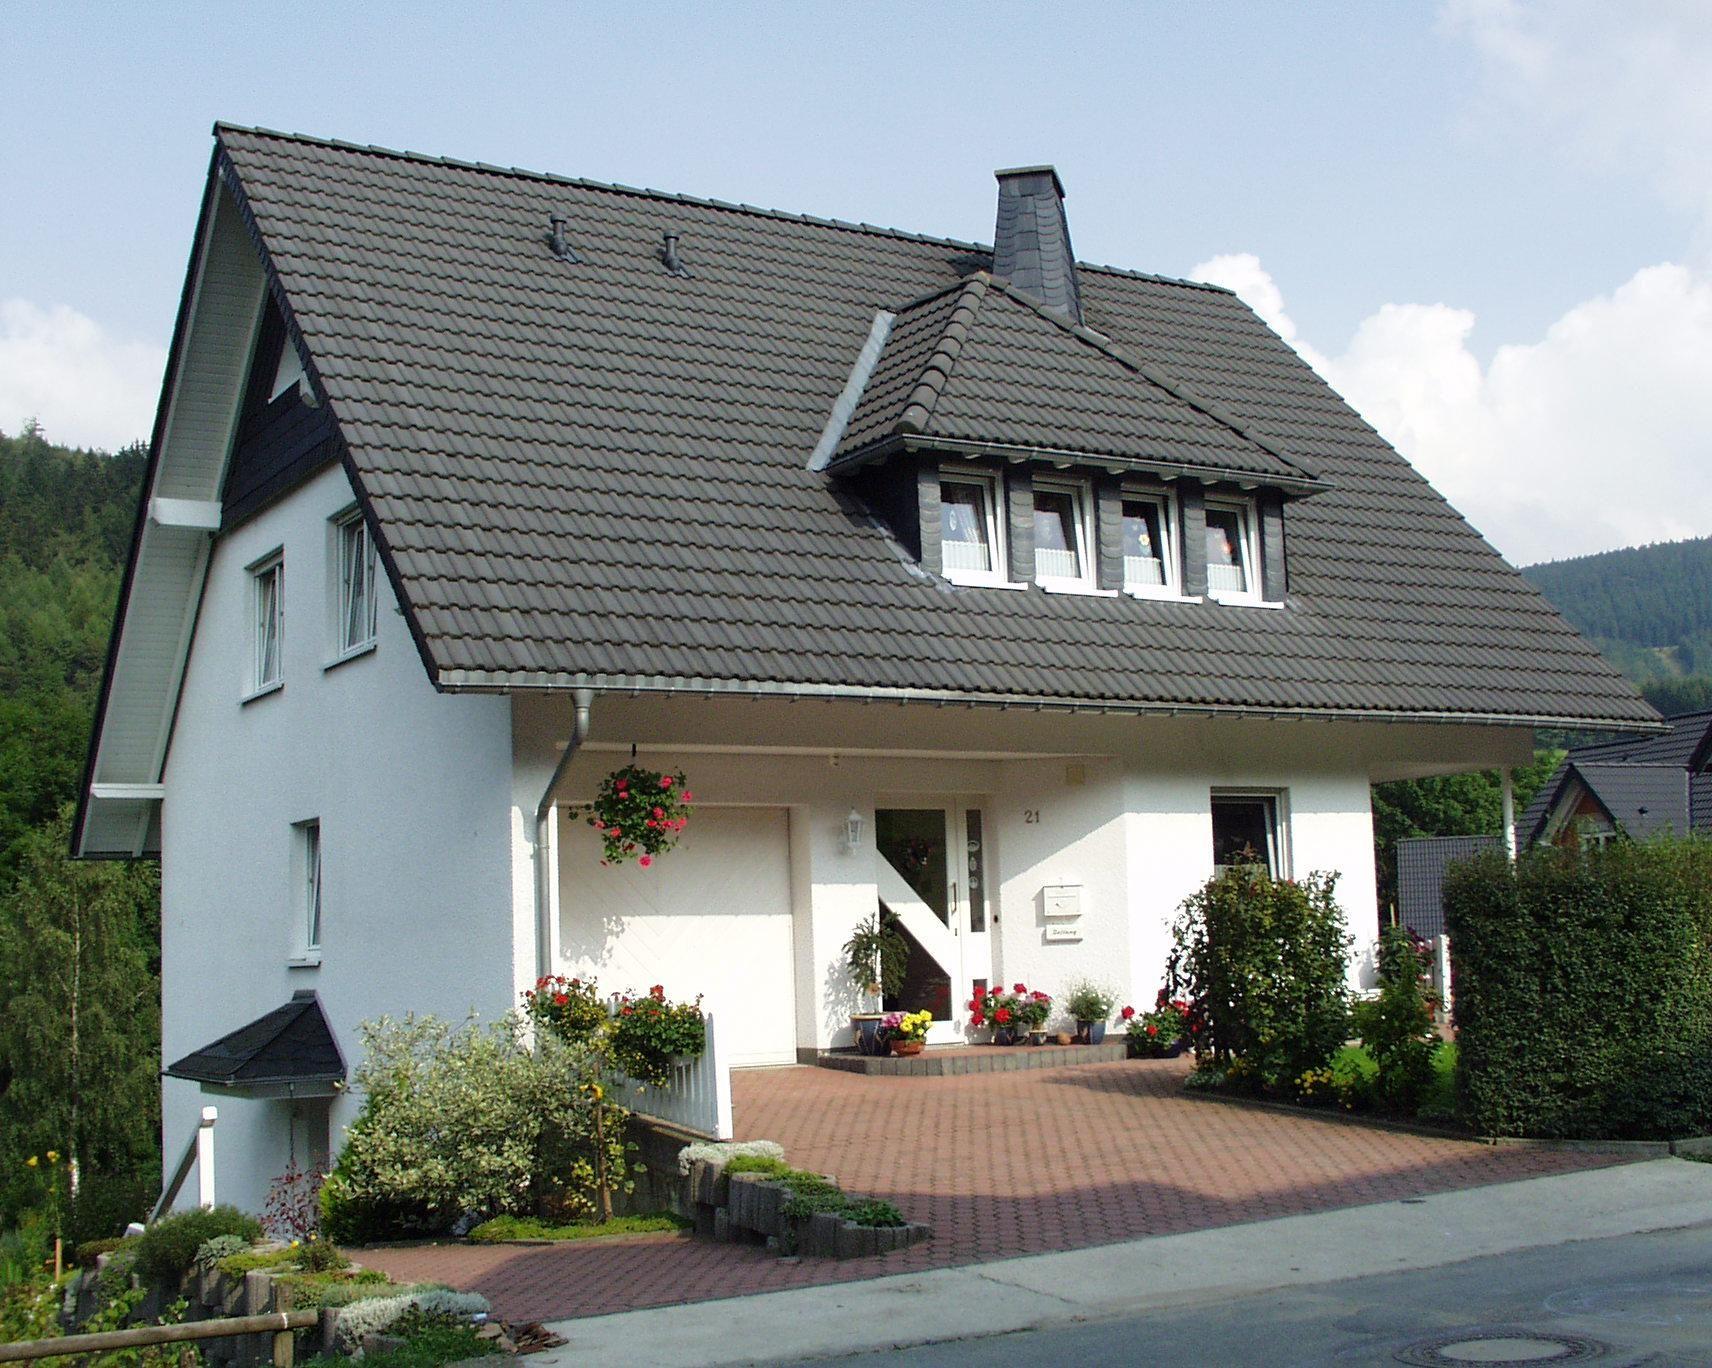 Gemütliche Ferienwohnung in ruhiger Lage mit  Ferienhaus in Nordrhein Westfalen